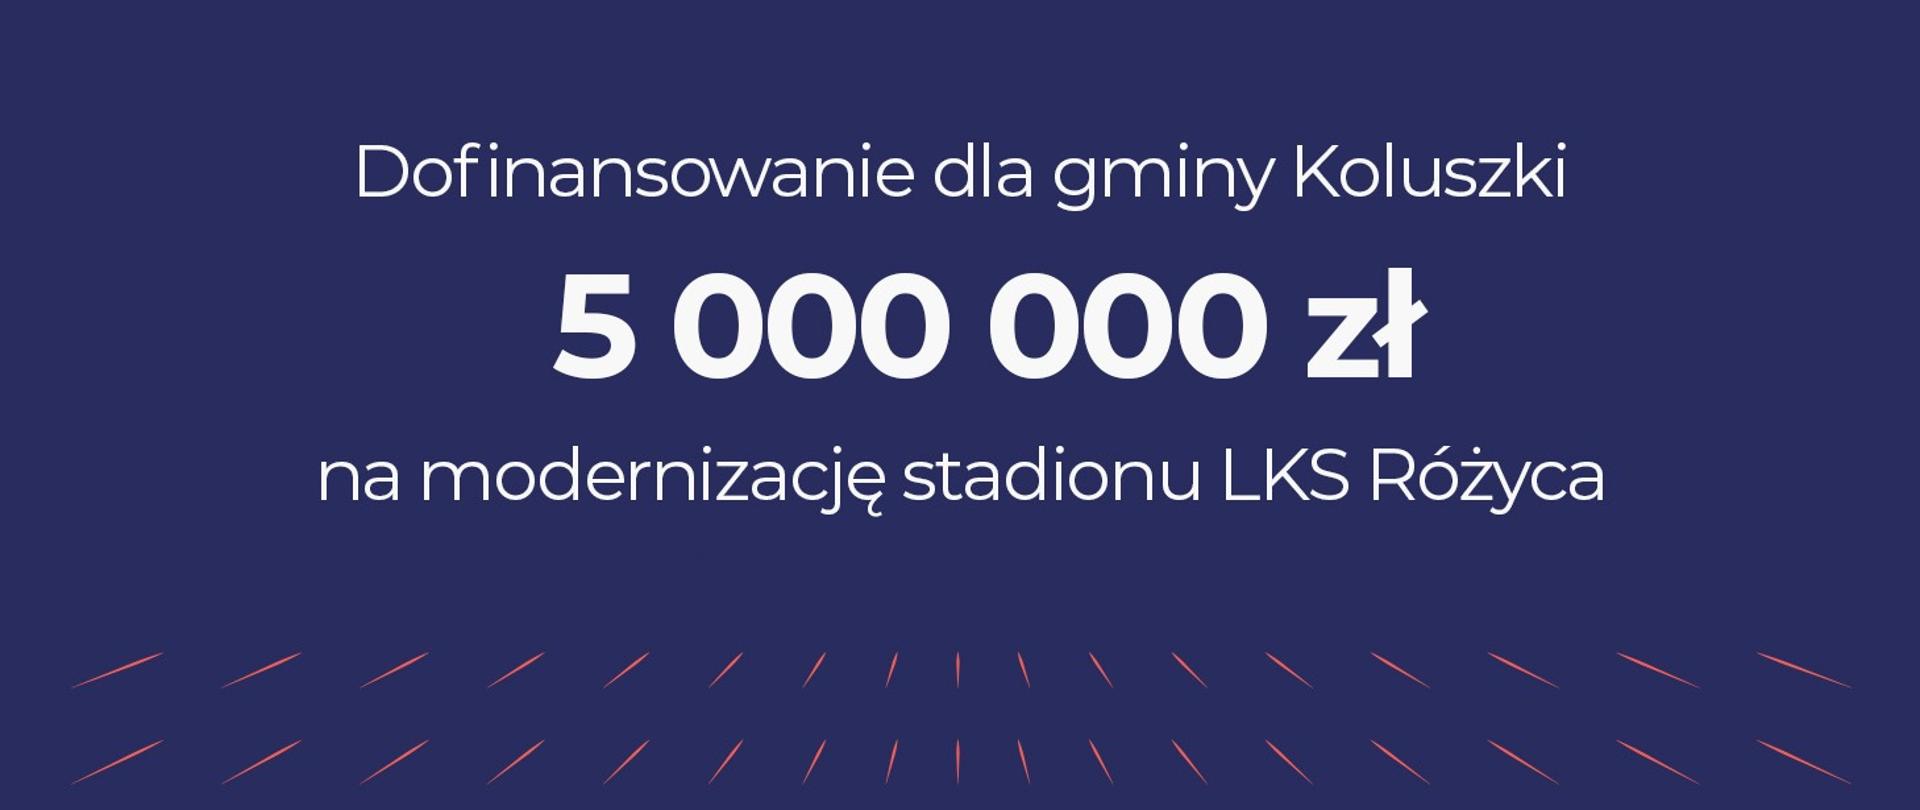 Wkrótce stadion LKS Różyca zostanie gruntownie zmodernizowany